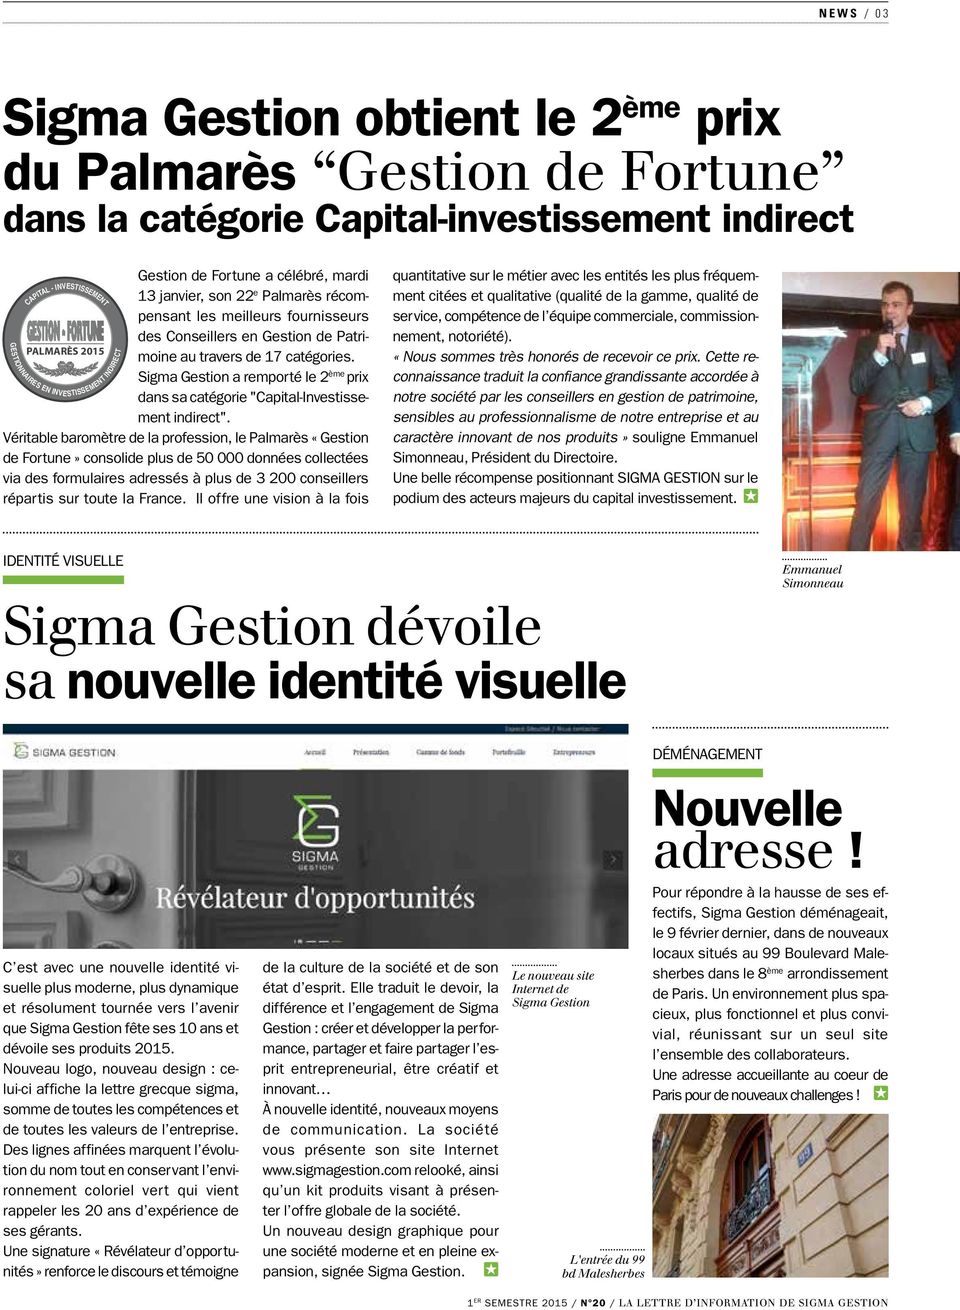 PALMARÈS 2015 Sigma Gestion a remporté le 2 ème prix dans sa catégorie "Capital-Investissement indirect".